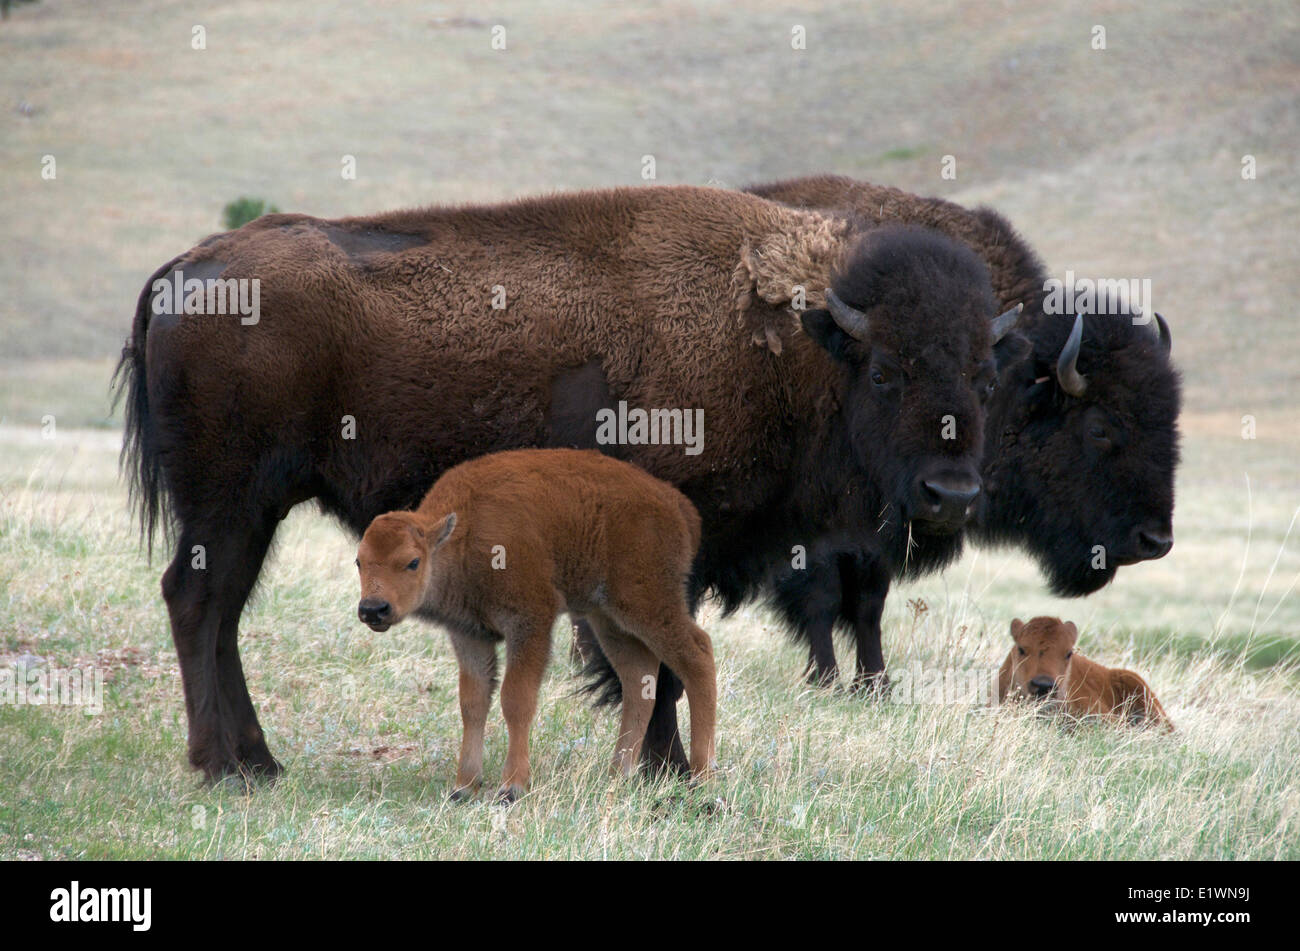 Wild bison d'Amérique (Bison bison) avec nouveau-né, le ressort du veau. Parc national de Wind Cave, Dakota du Sud, USA. Banque D'Images